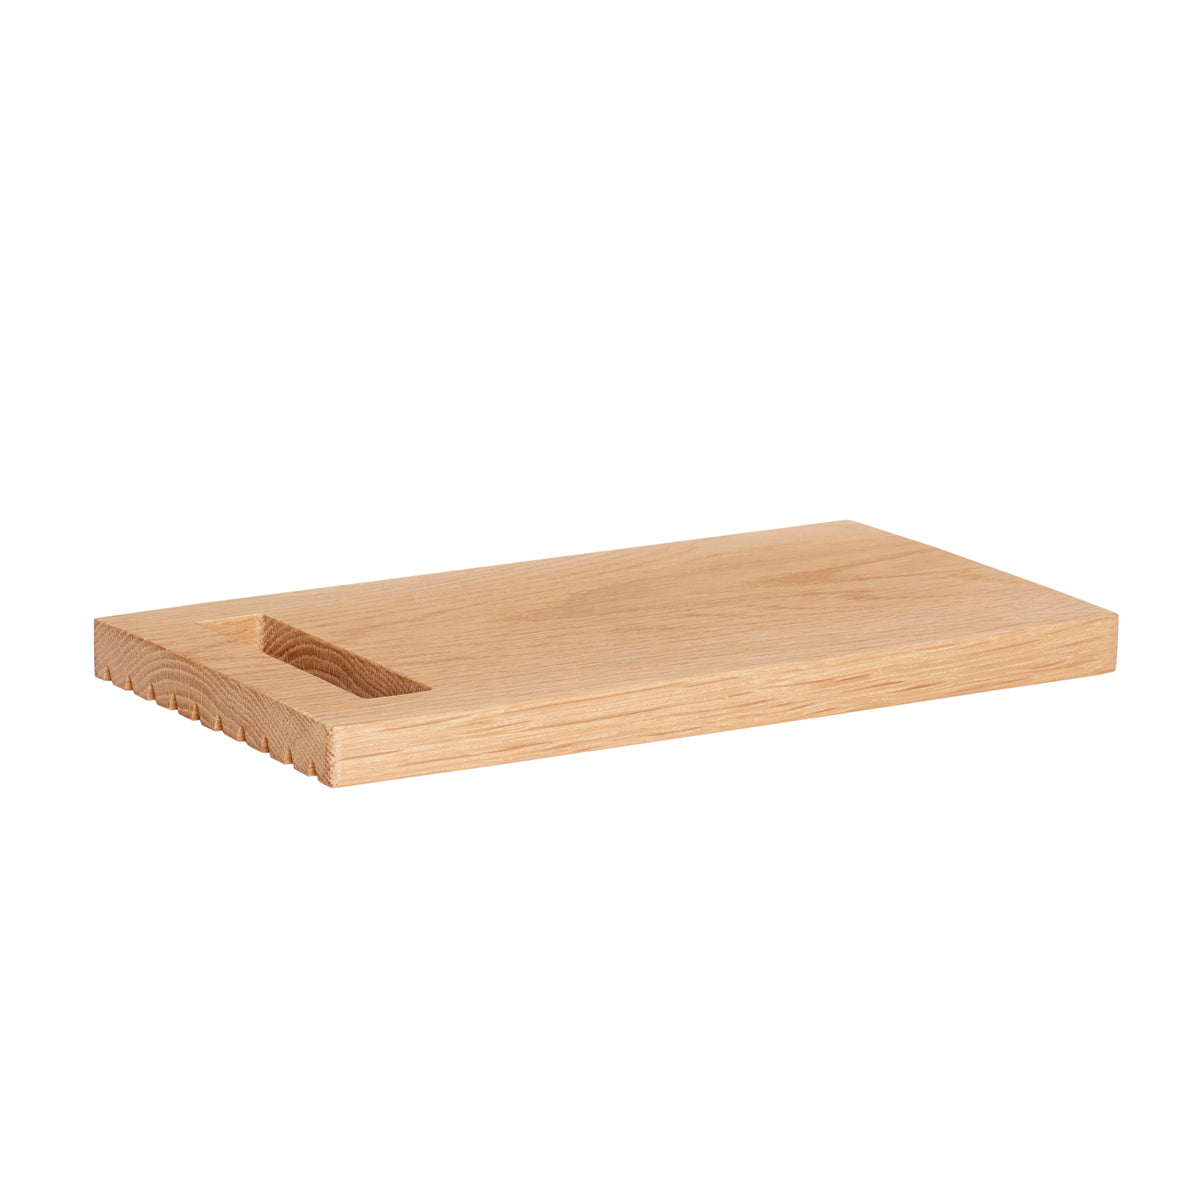 Hübsch Cutting board, oak, FSC, nature, s/2